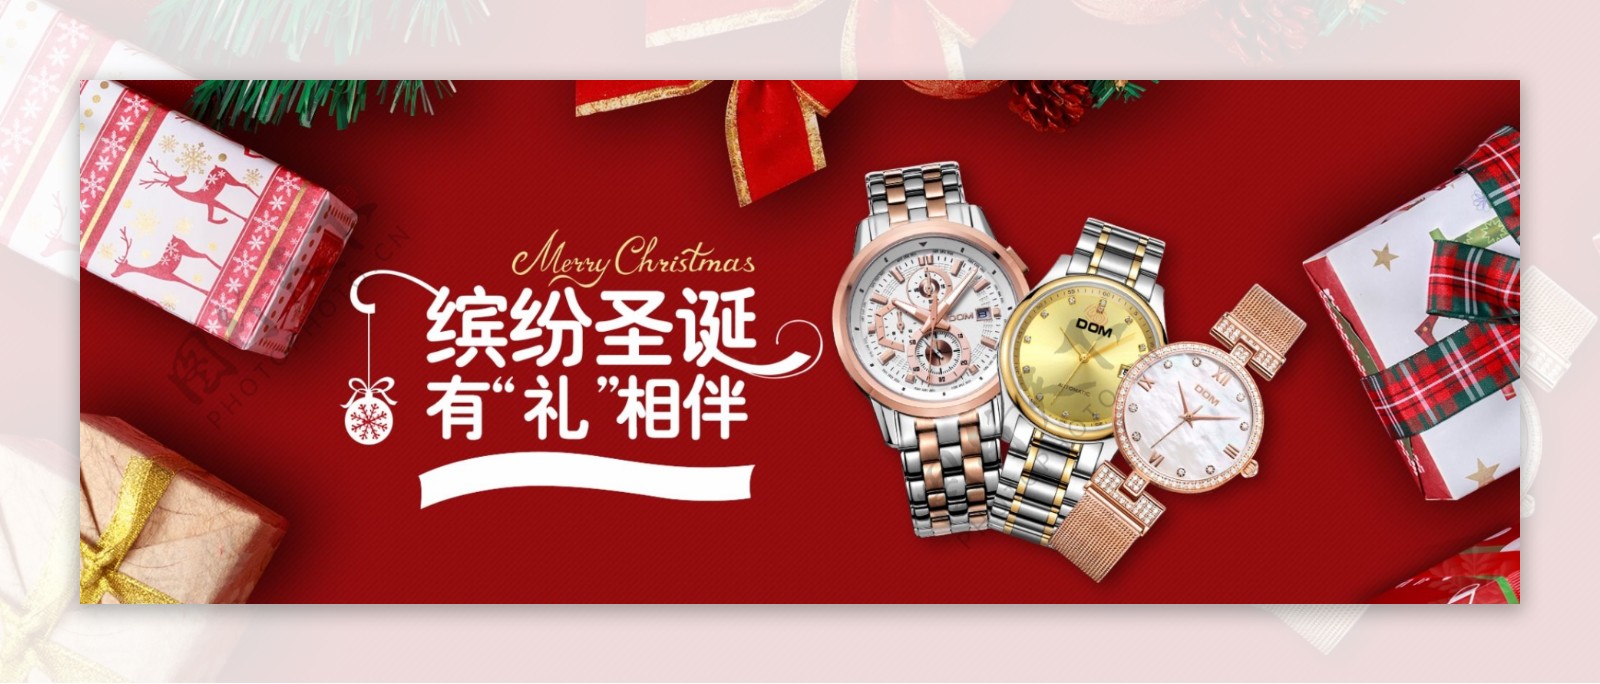 圣诞狂欢节男士手表促销活动banner